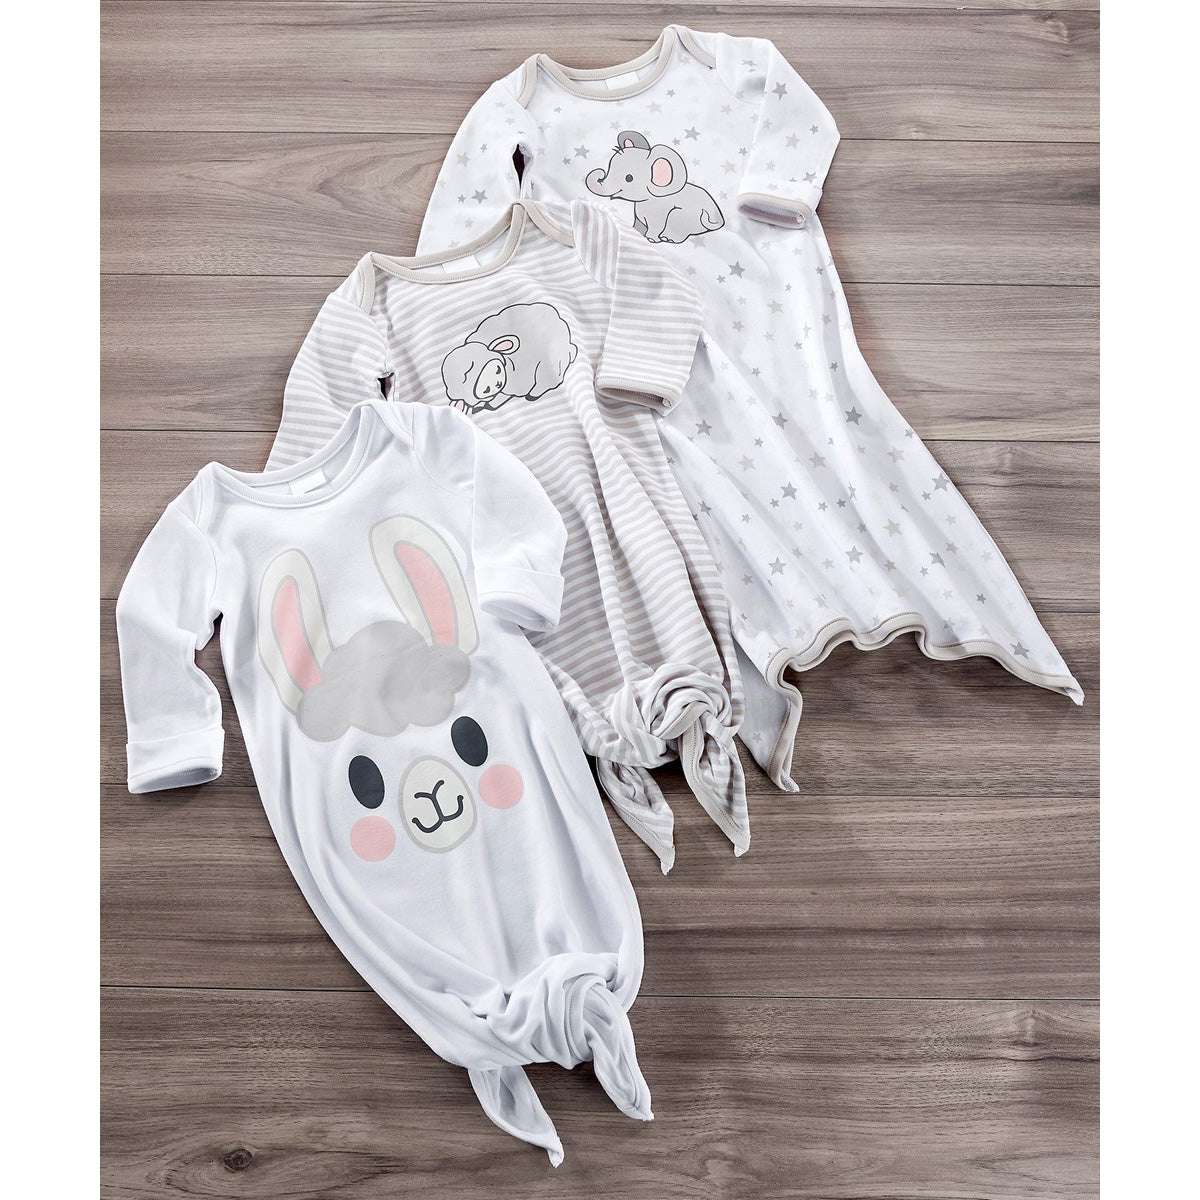 Lil' Llama Baby Sleep Gowns, 3 Designs, 0-6 MOS.